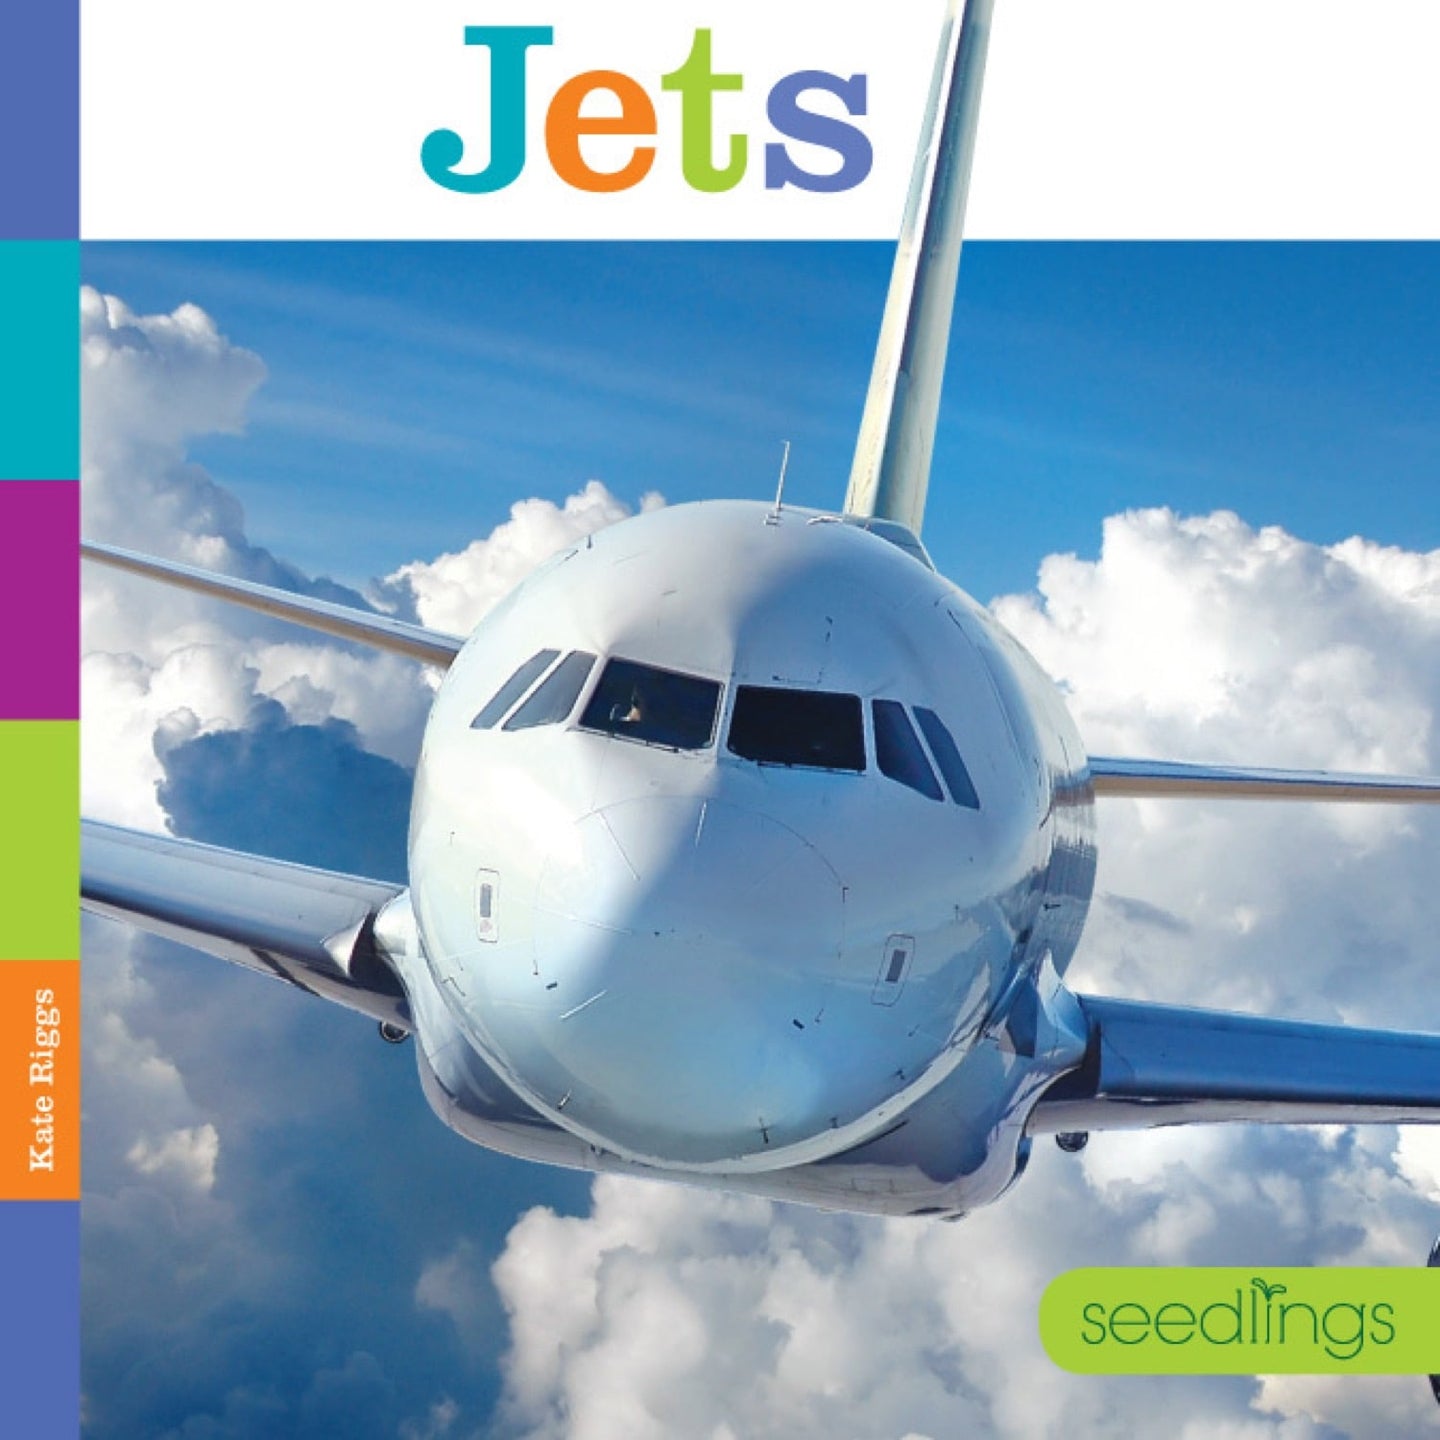 Seedlings: Jets